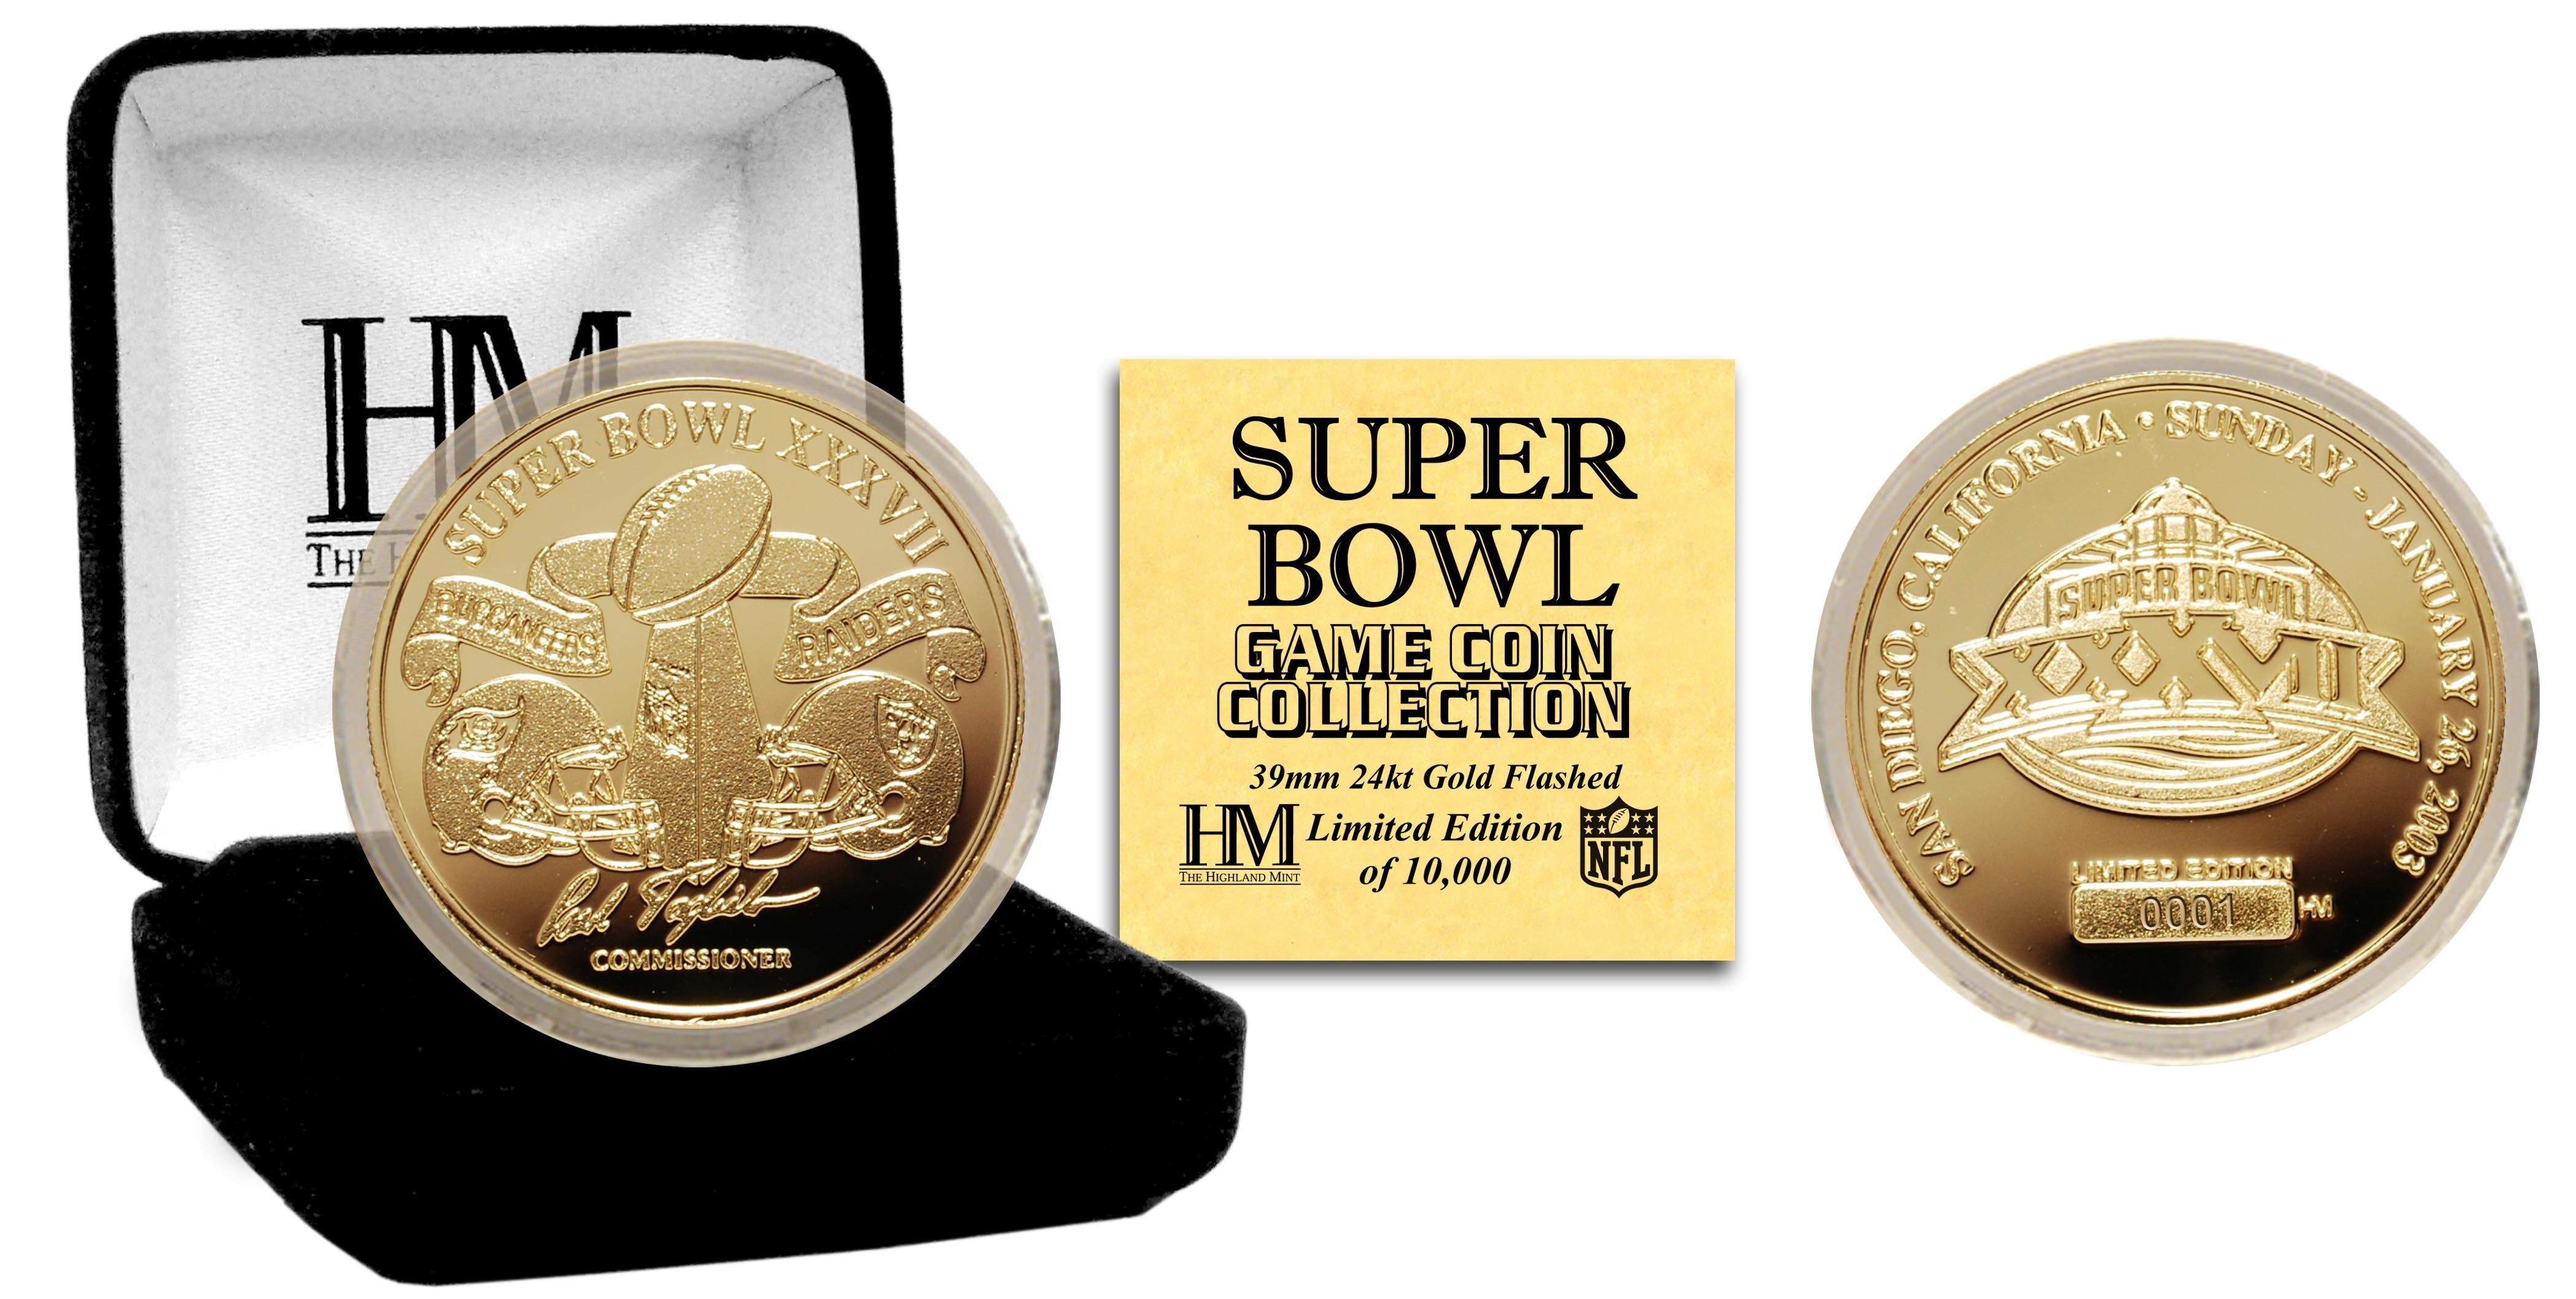 Super Bowl XXXVII 24kt Gold Flip Coin